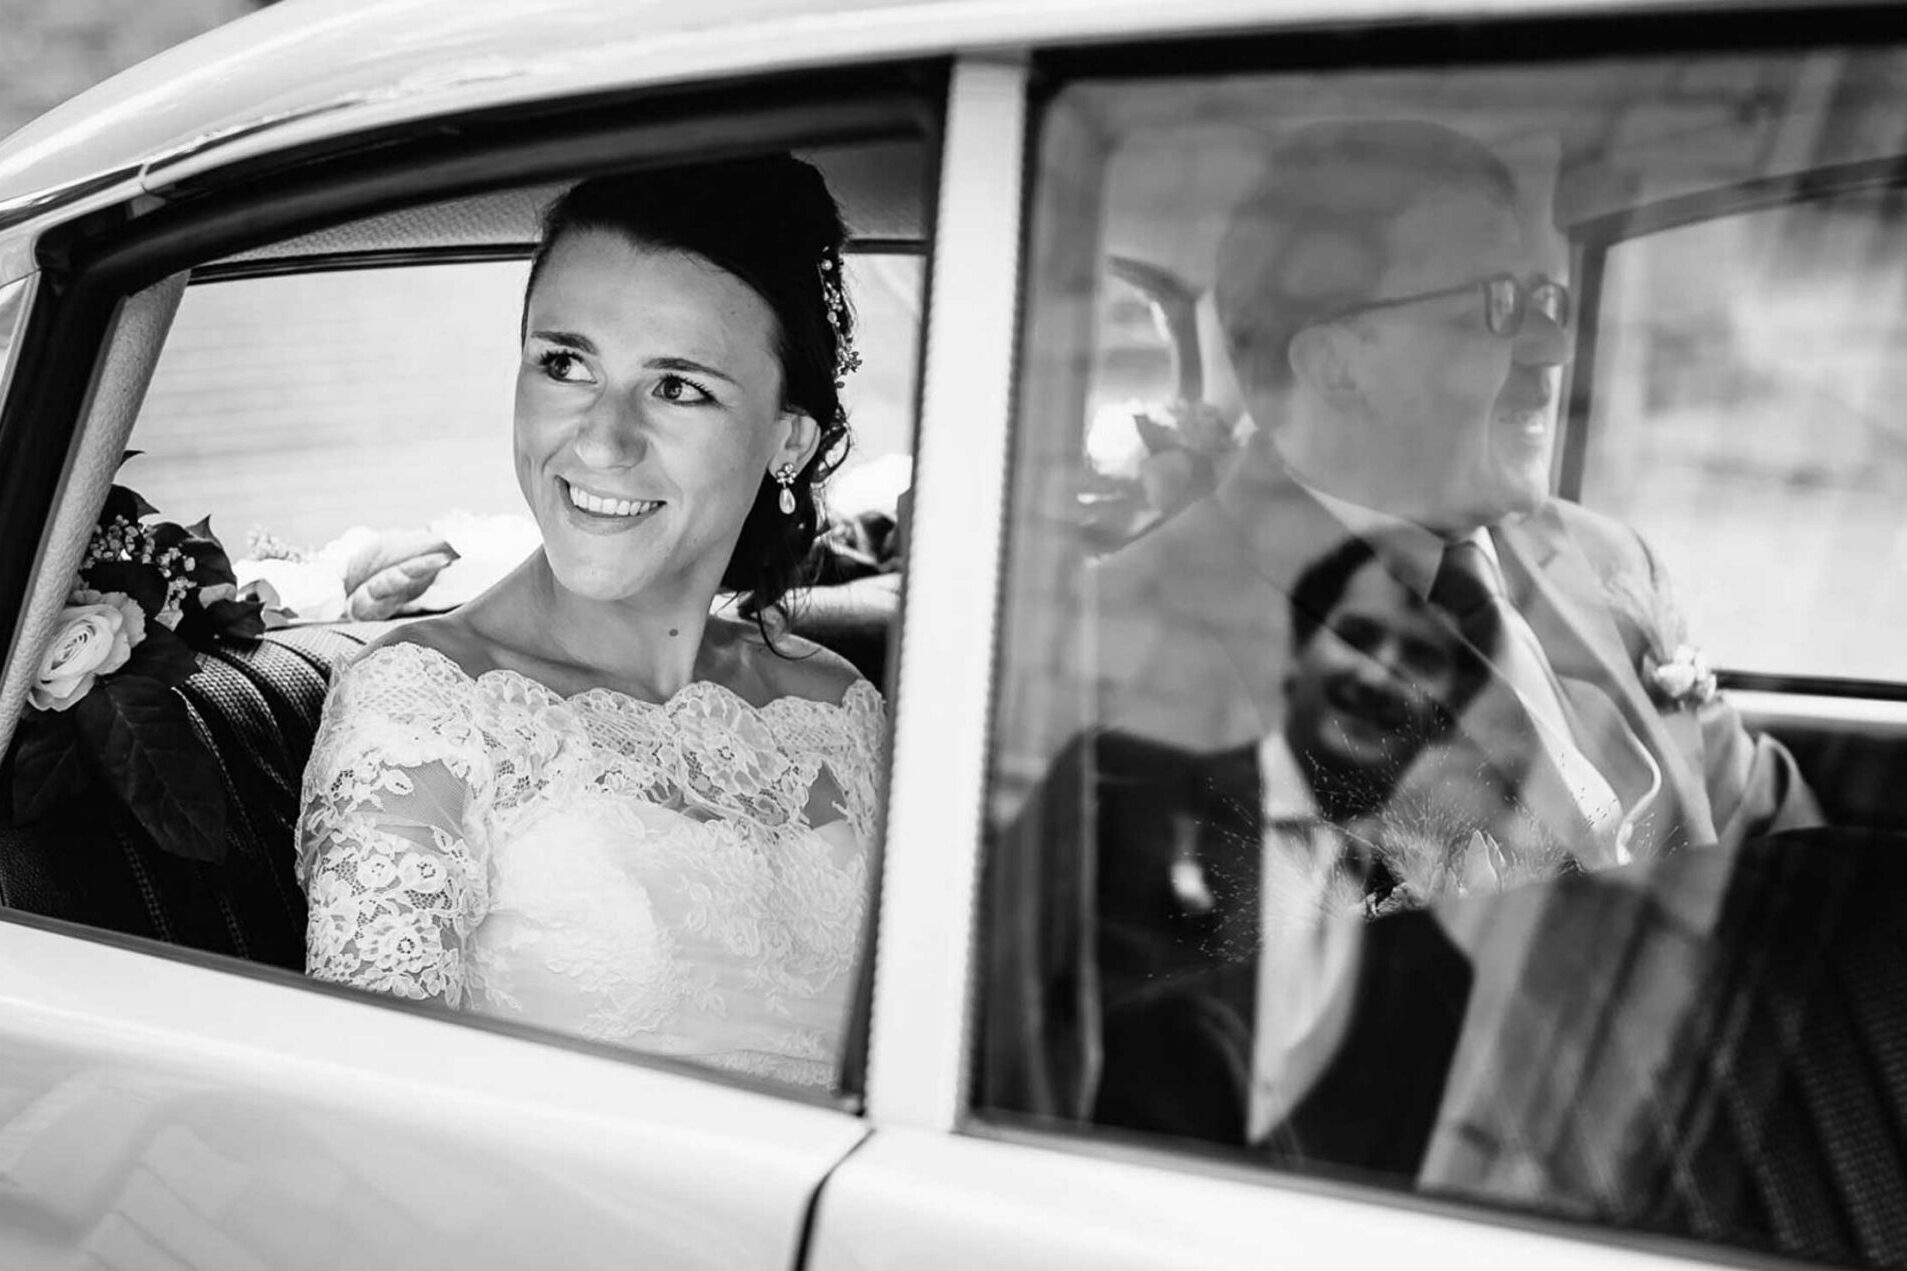 Uitzonderlijk Knappe Zwart-wit Foto: Bruid Kijkt uit Retro Ceremoniewagen naar Bruidegom in Spiegeling van Autoraam